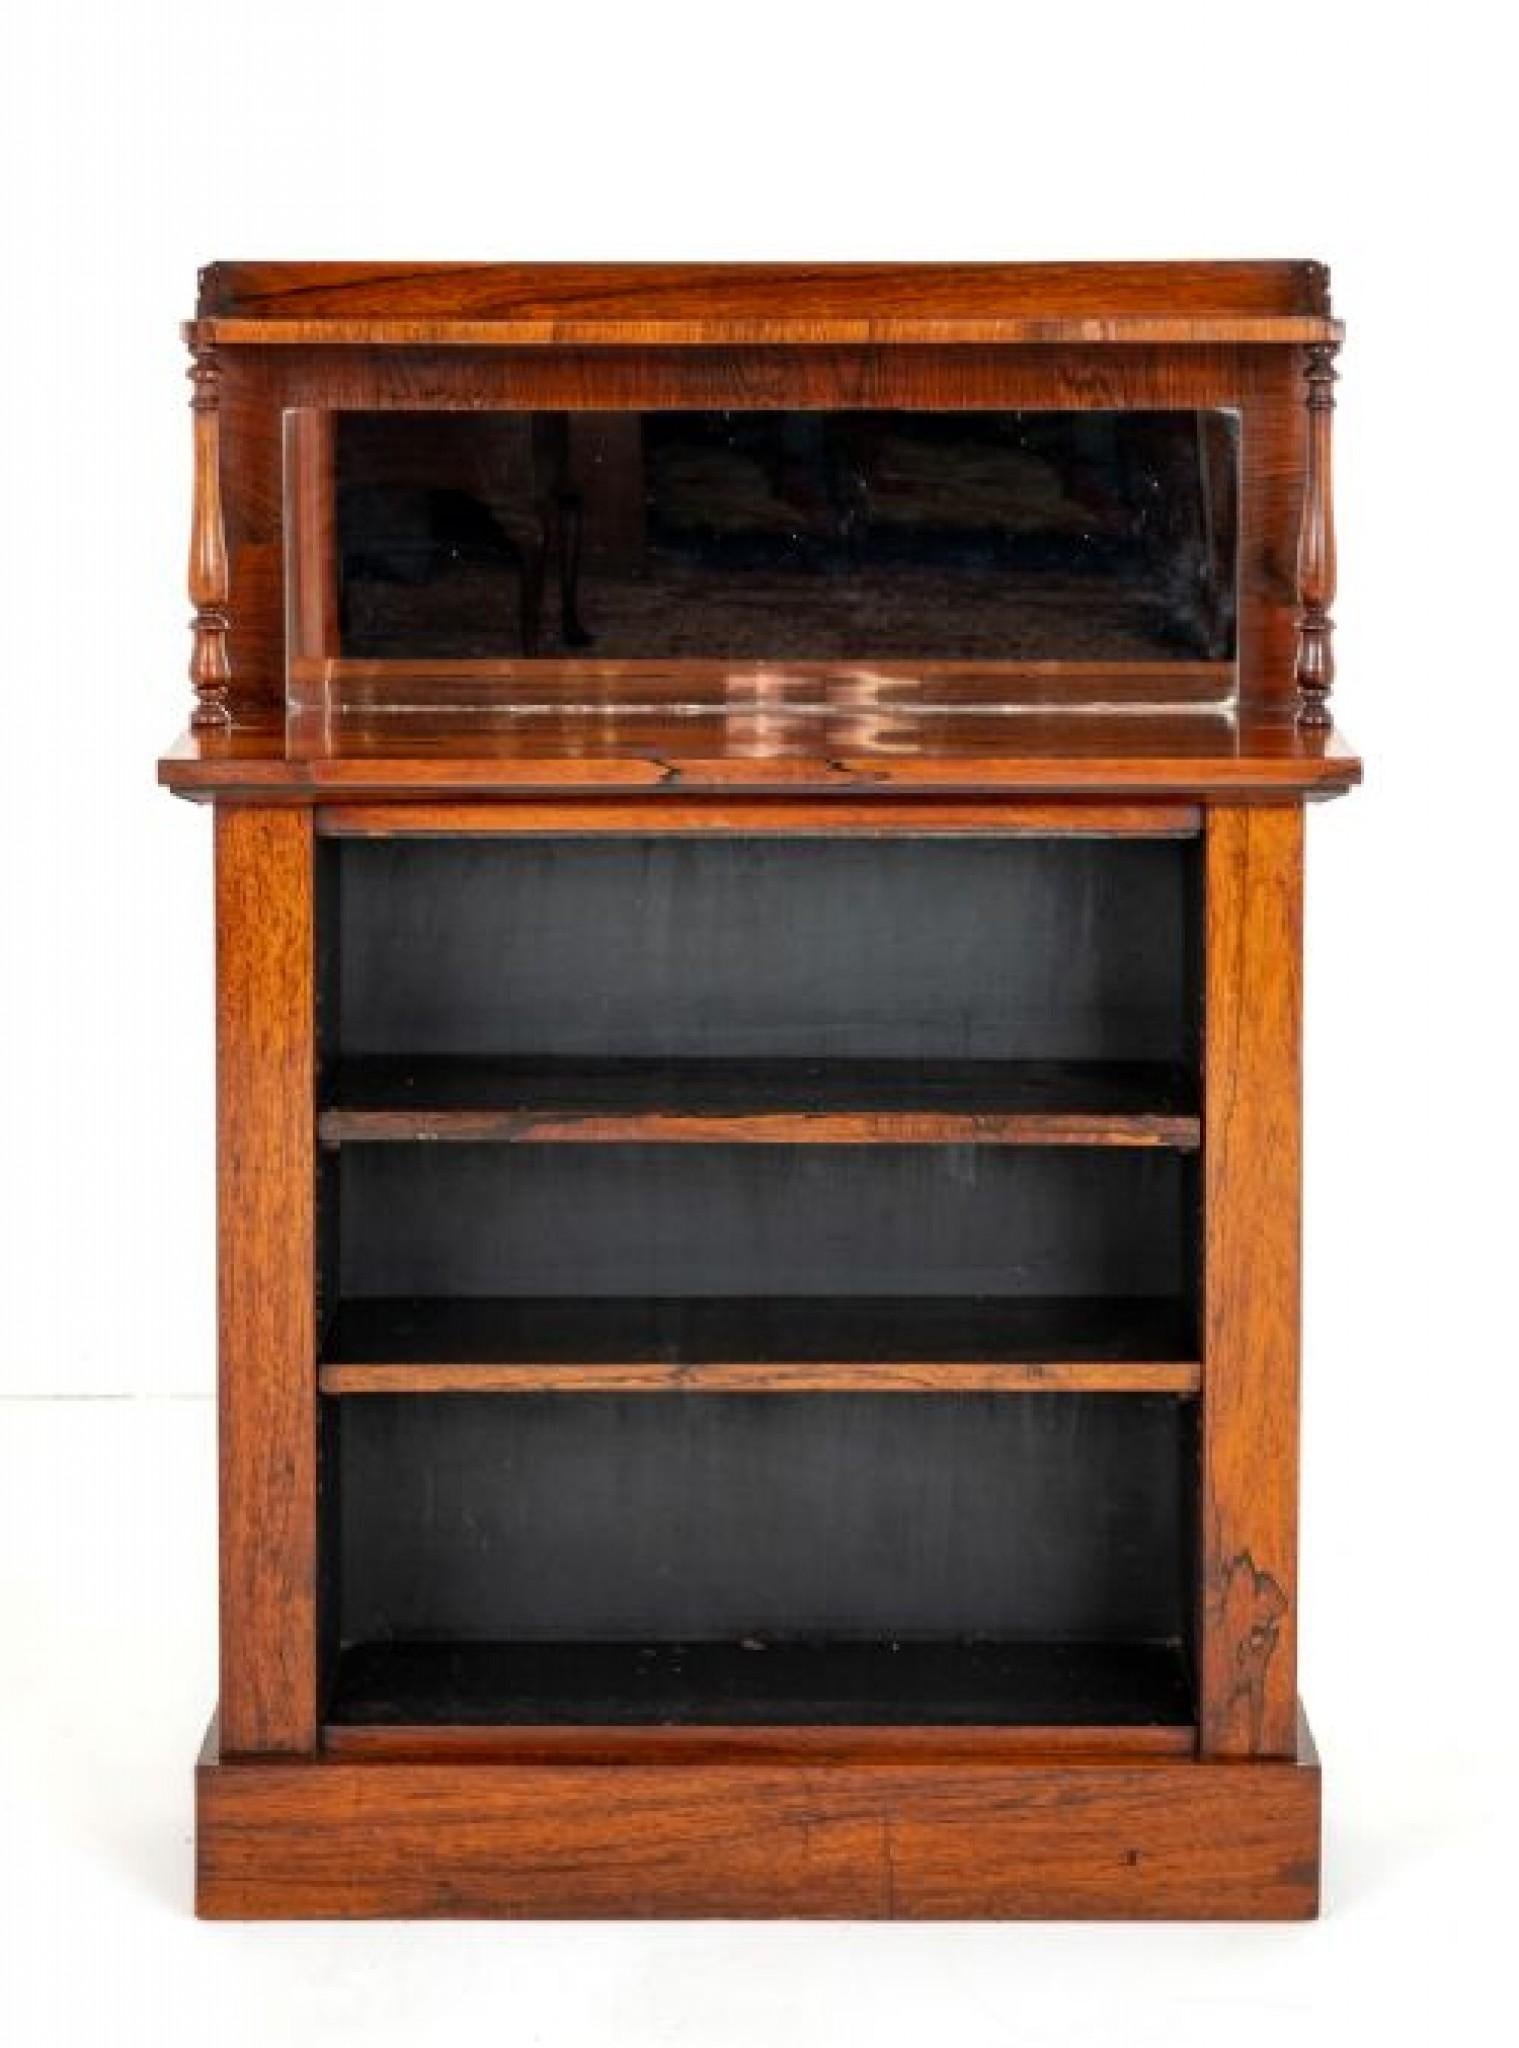 Ungewöhnliches frühviktorianisches offenes Bücherregal.
Dieses Bücherregal steht auf einem Sockel.
Viktorianischer Zeitabschnitt
Mit 2 verstellbaren Einlegeböden.
Das Oberteil stützt sich auf gedrechselte Säulen mit einer kleinen Aufkantung und